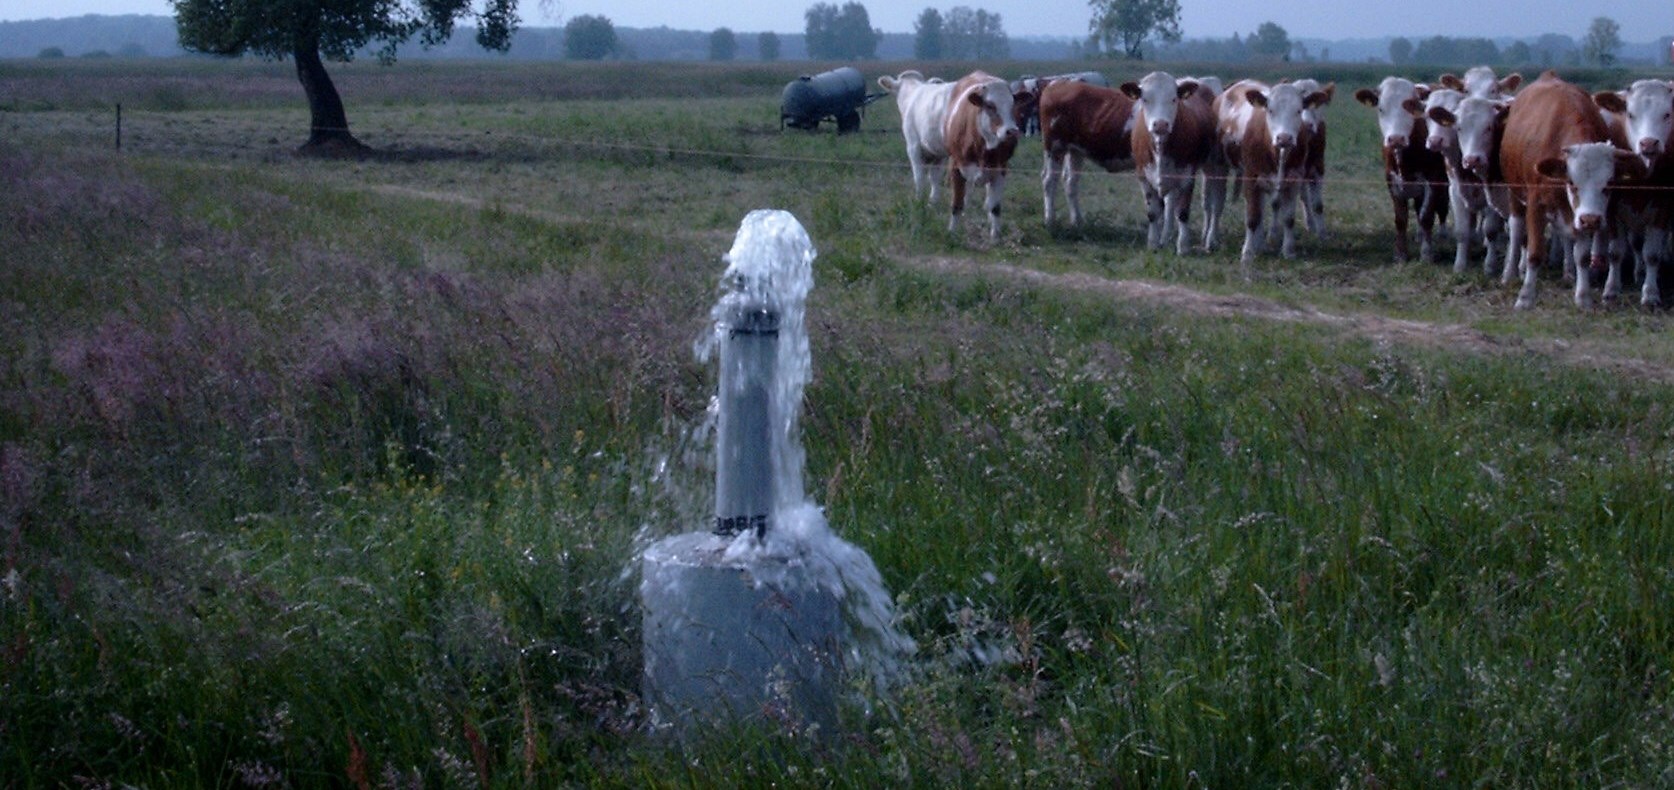 Artesischer Brunnen mit neugierigen Kühen